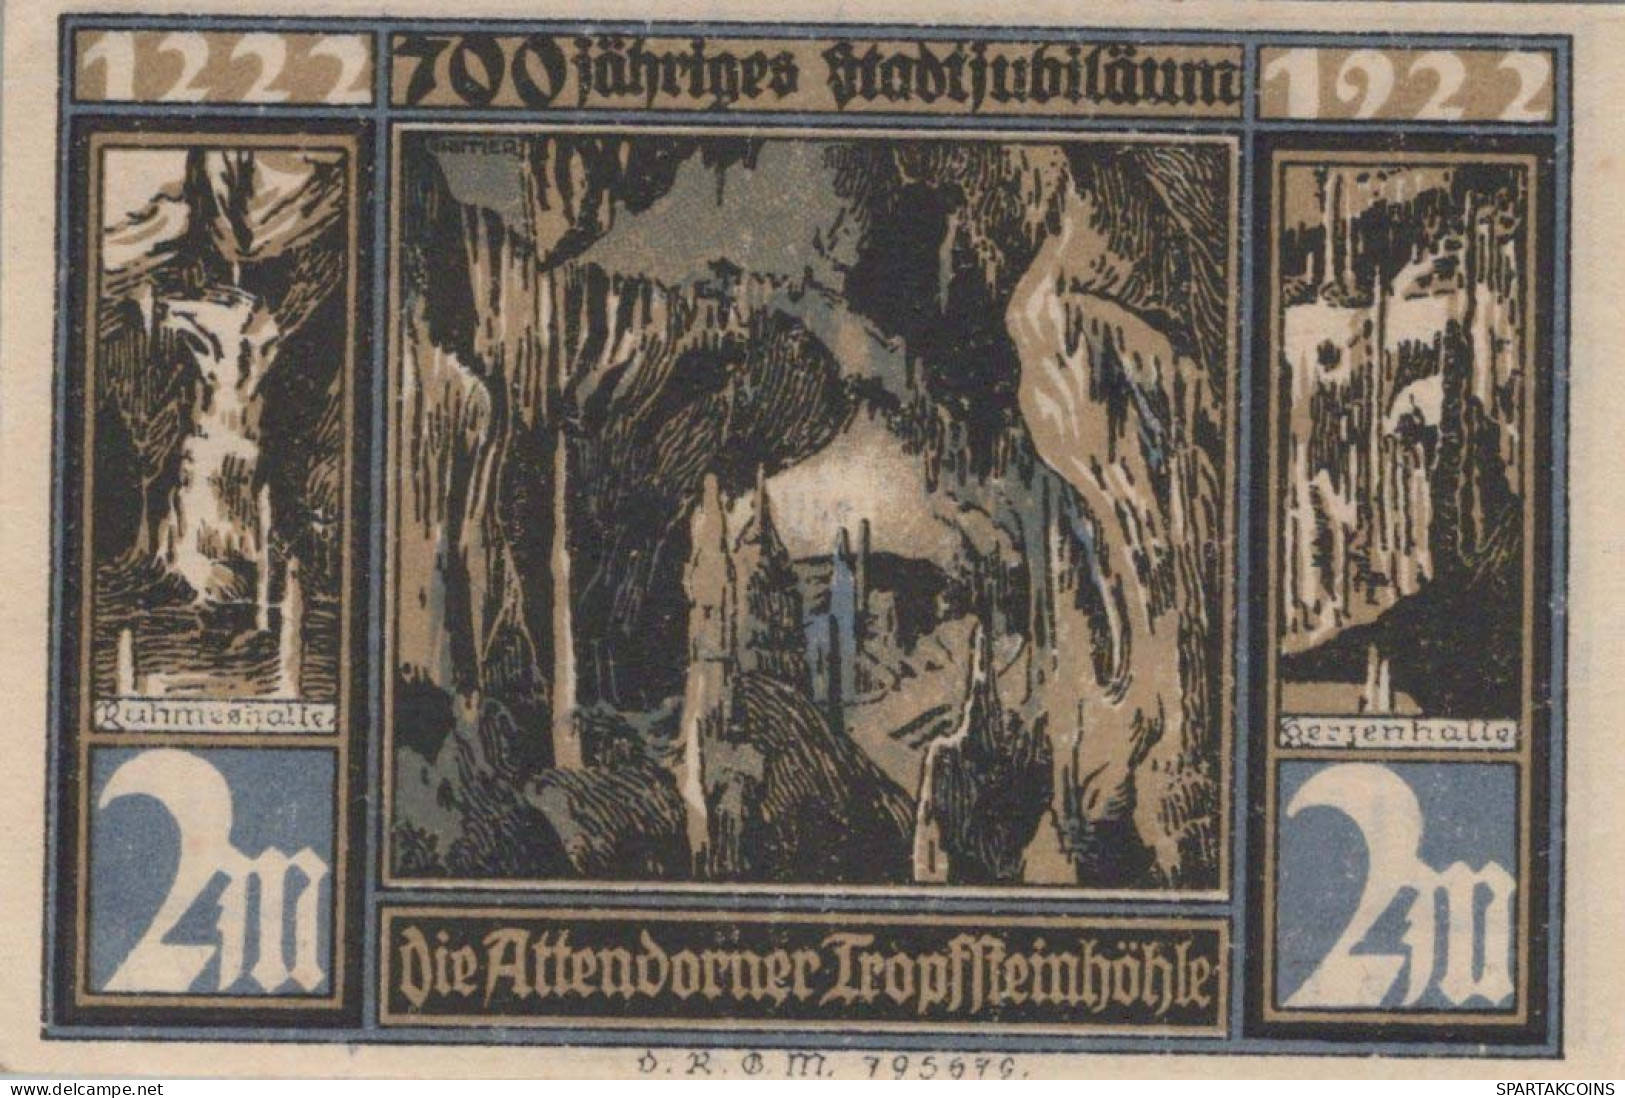 2 MARK 1922 Stadt ATTENDORN Westphalia UNC DEUTSCHLAND Notgeld Banknote #PC705 - [11] Local Banknote Issues